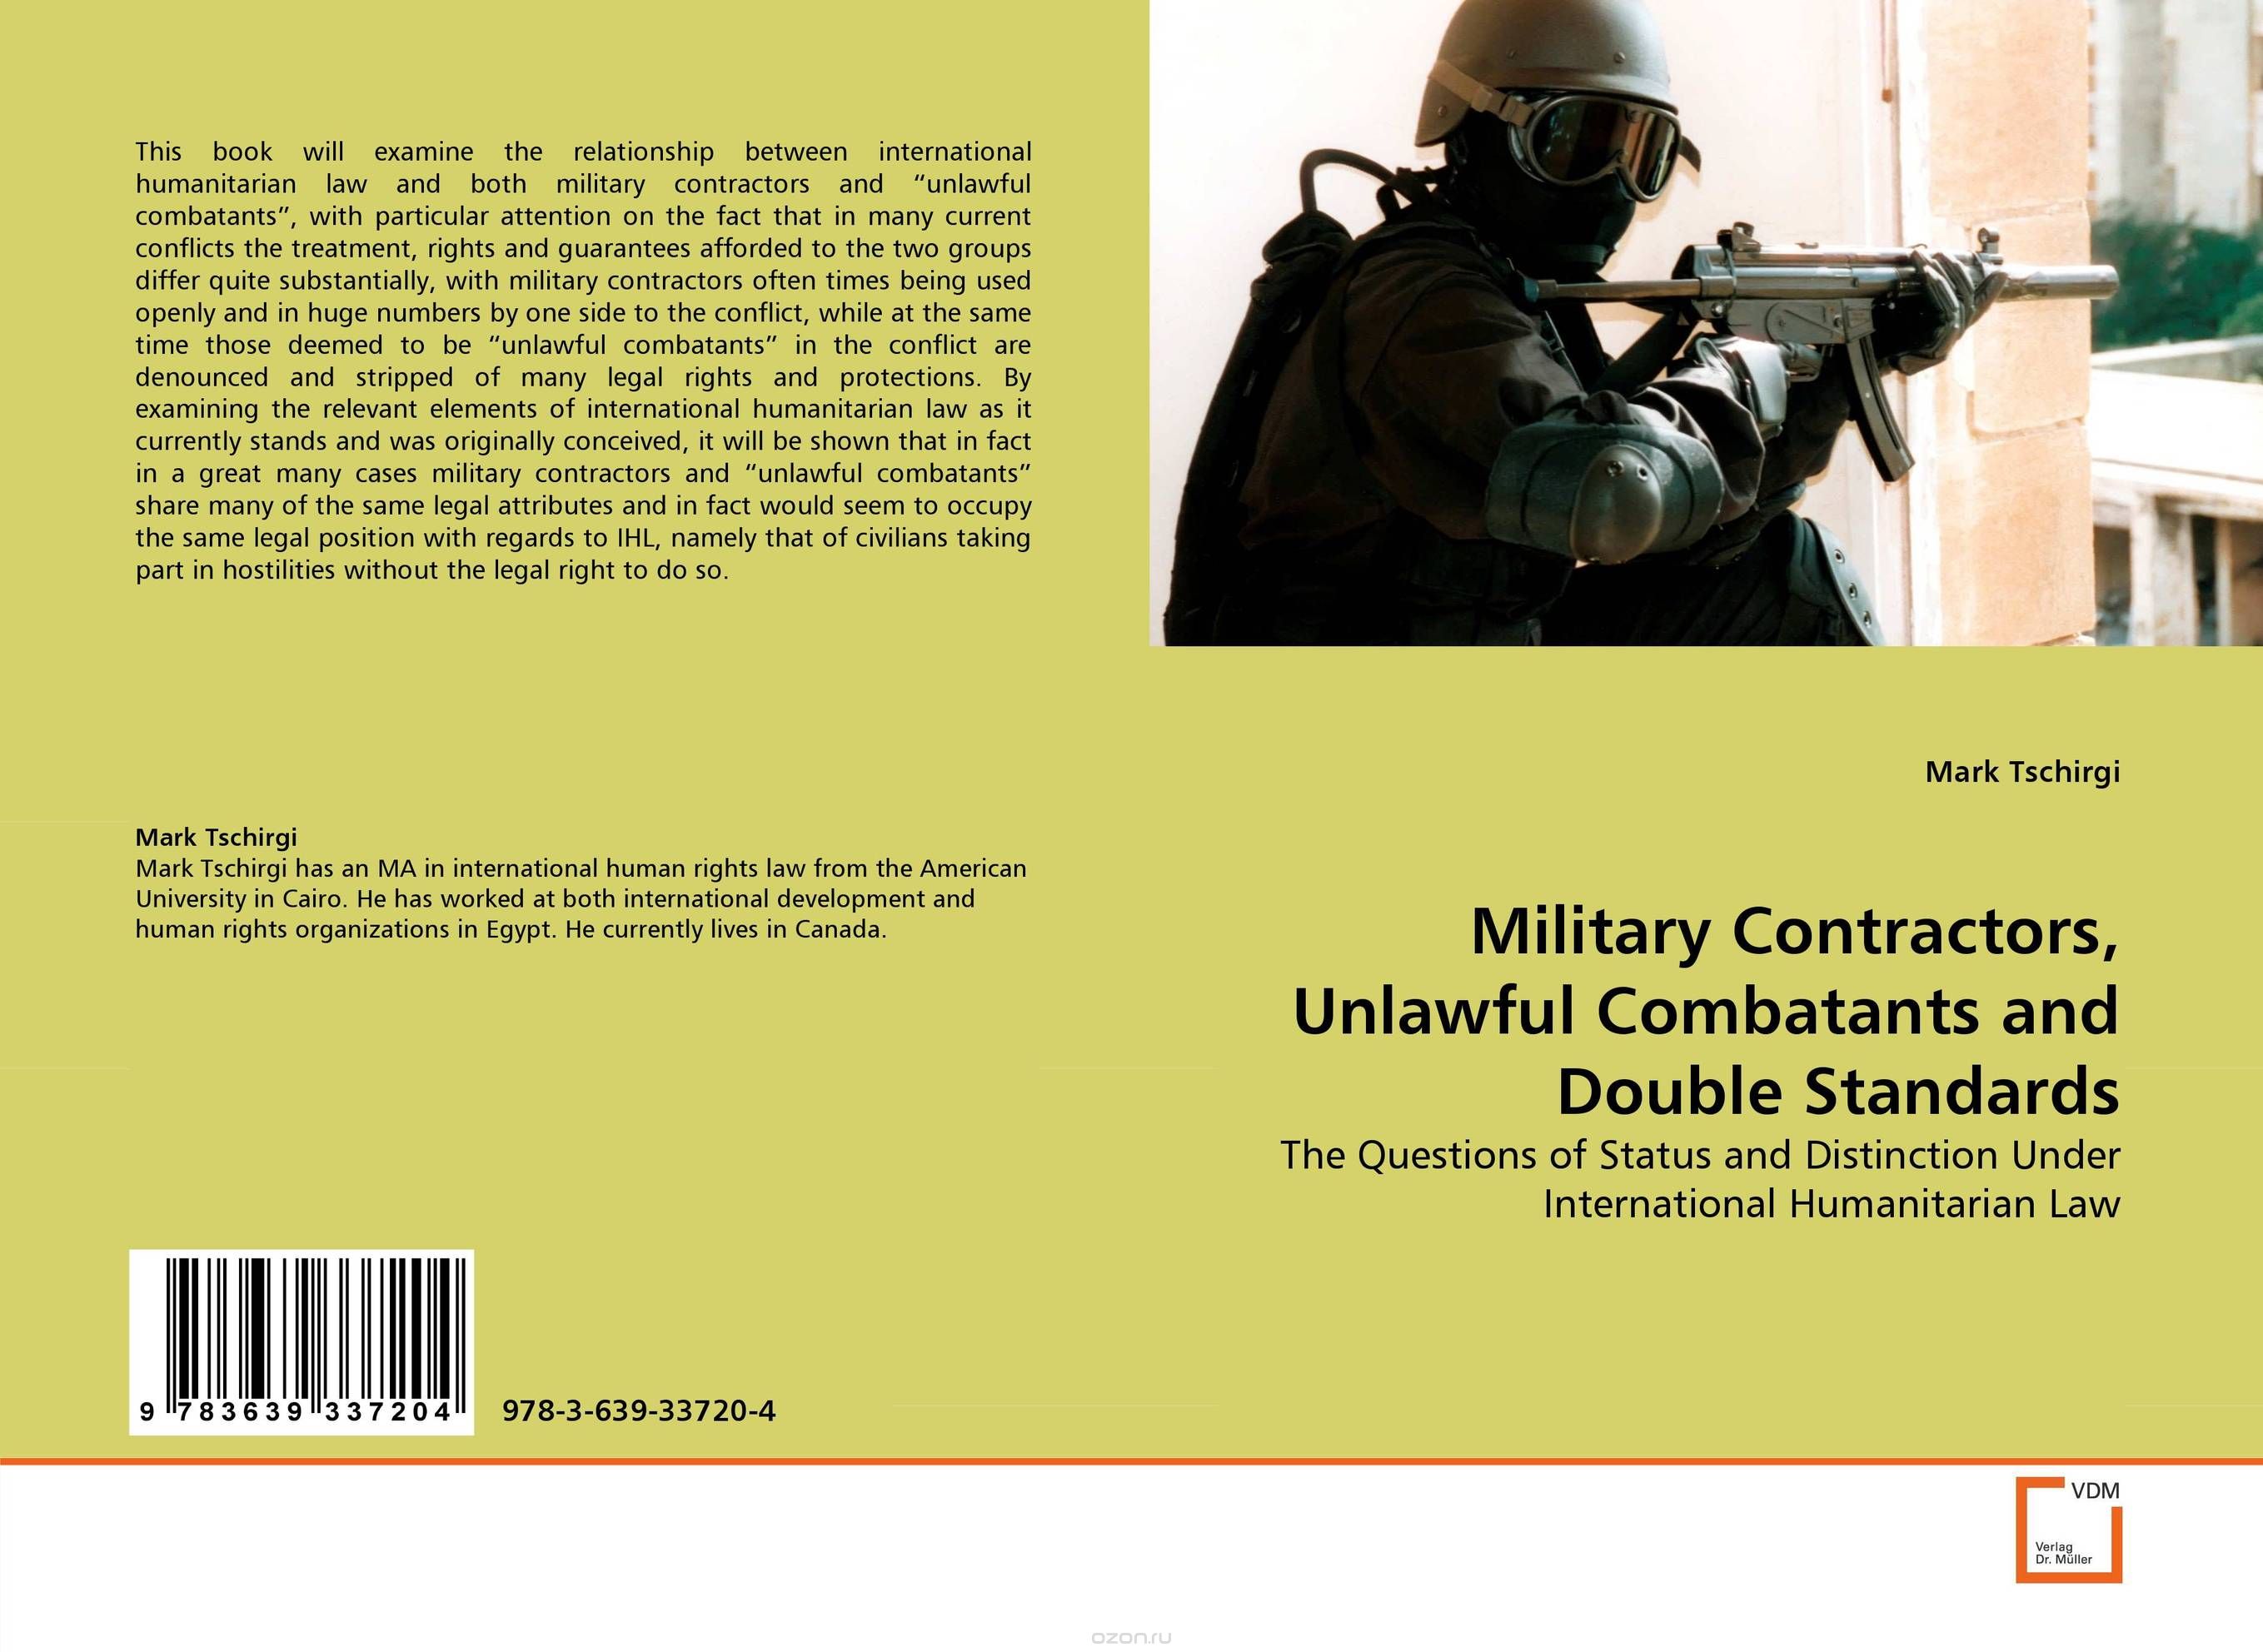 Скачать книгу "Military Contractors, Unlawful Combatants and Double Standards"